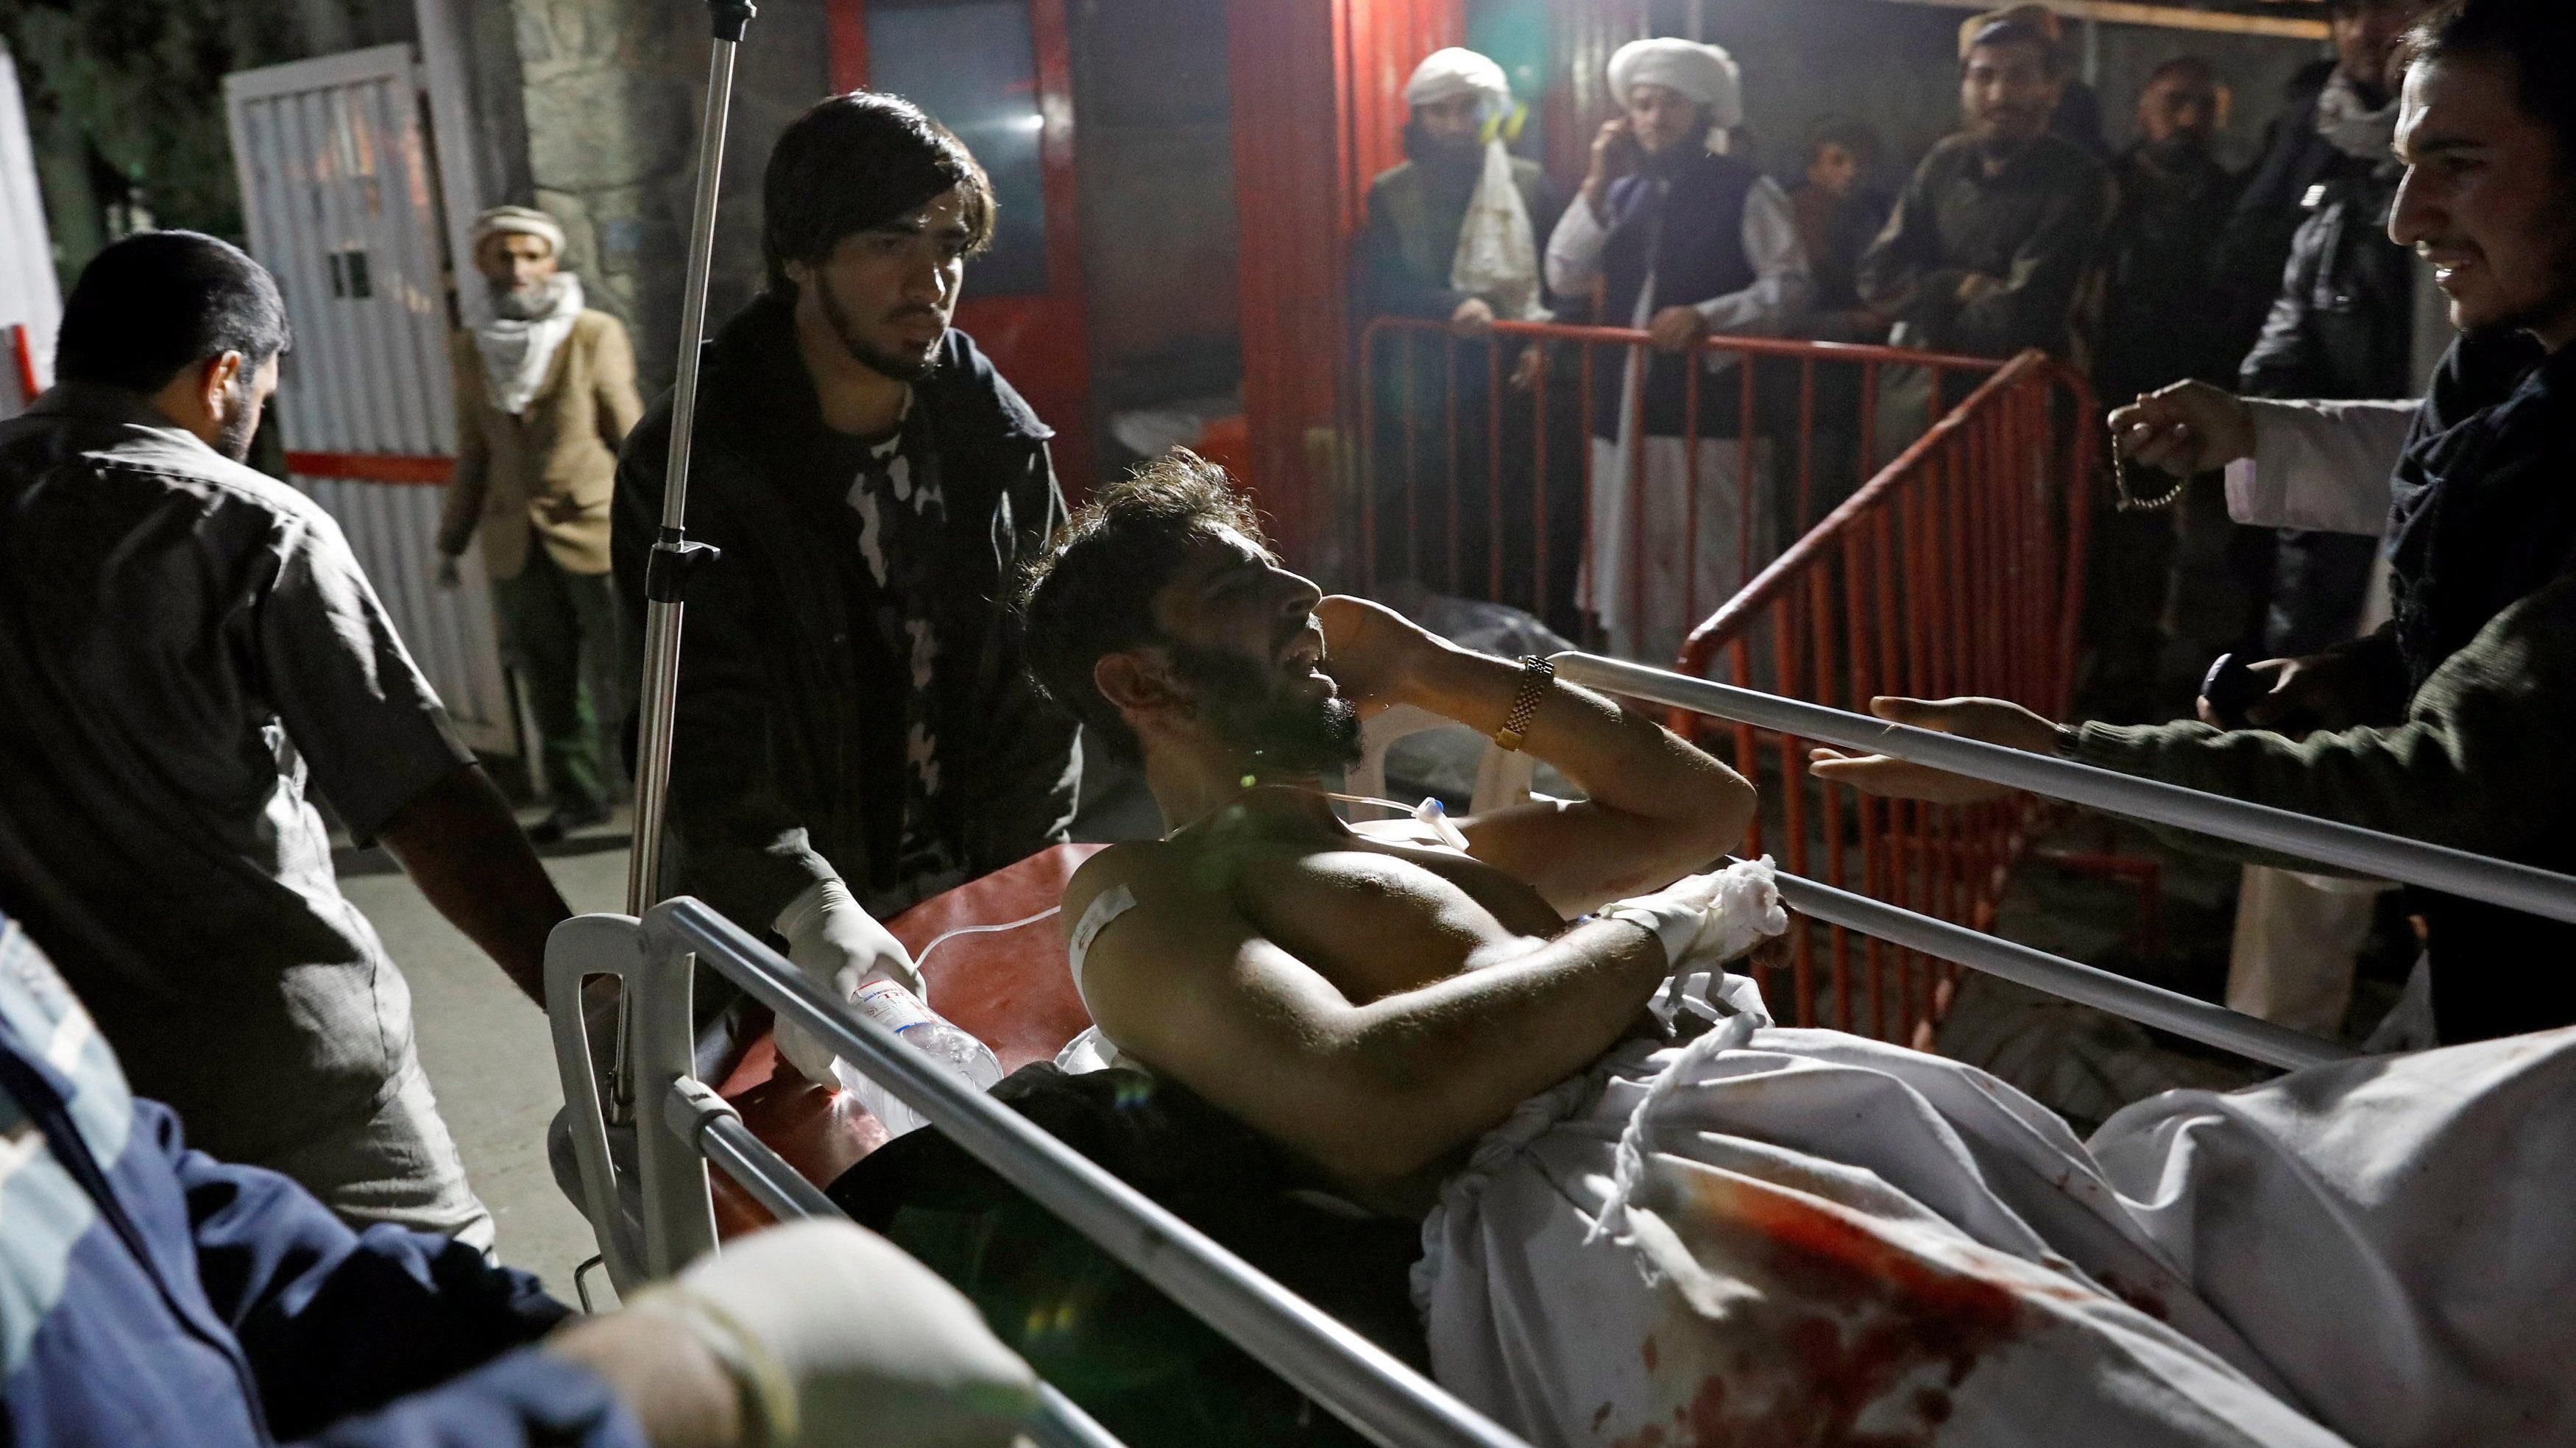 В Афганістані смертник вчинив кривавий теракт під час релігійних святкувань: фото 18+